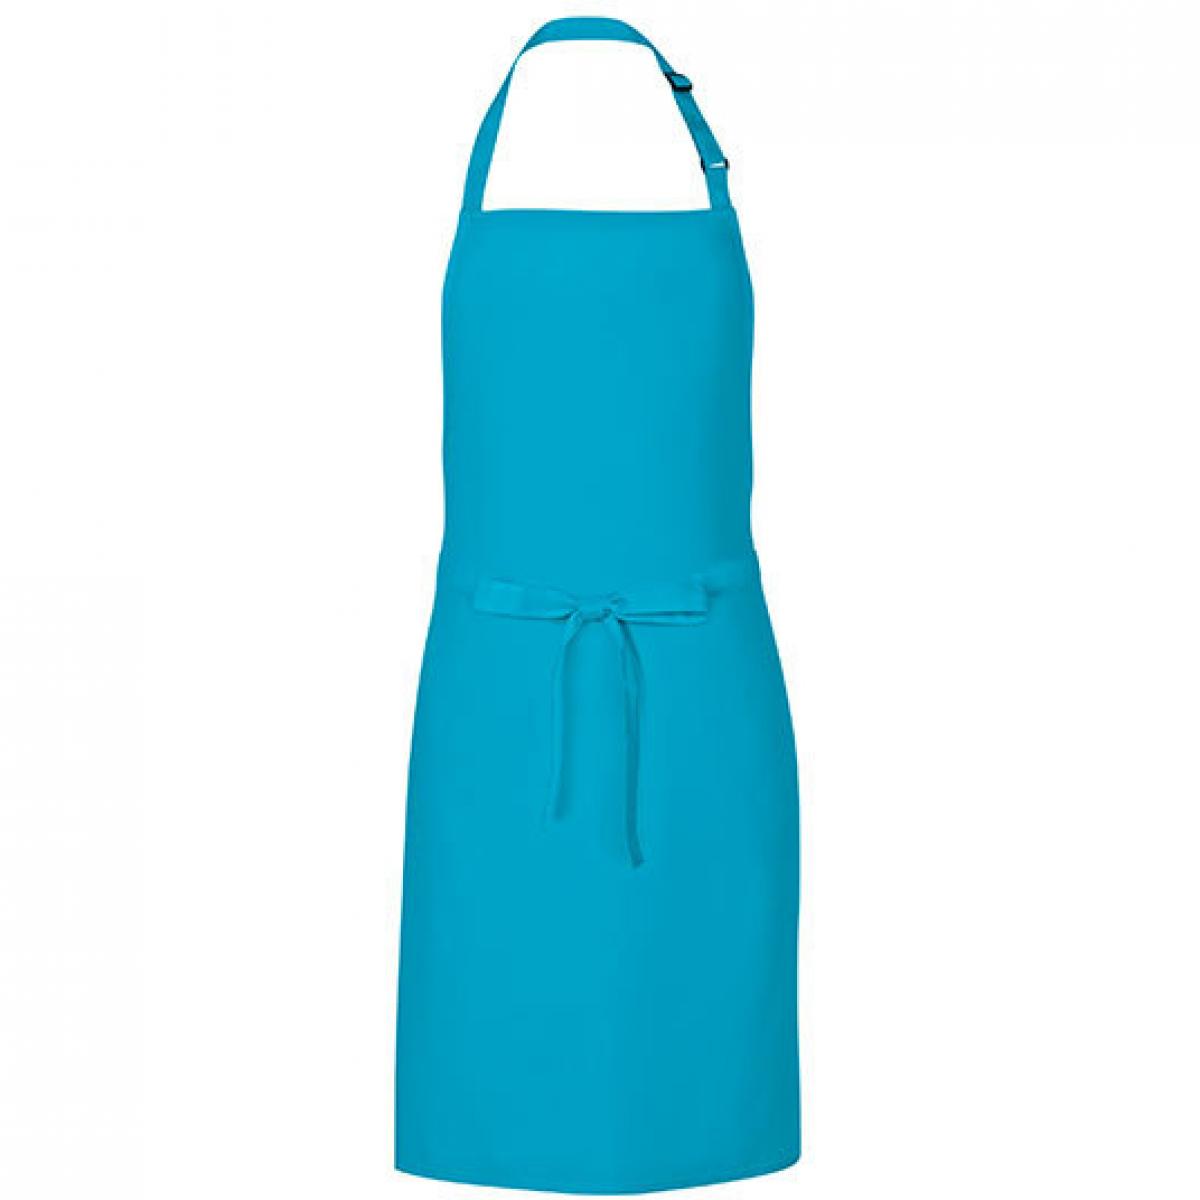 Hersteller: Link Kitchen Wear Herstellernummer: MS8572 Artikelbezeichnung: Multi Apron - 72 x 85 cm - Waschbar bis 60 °C Farbe: Turquoise (ca. Pantone 312)